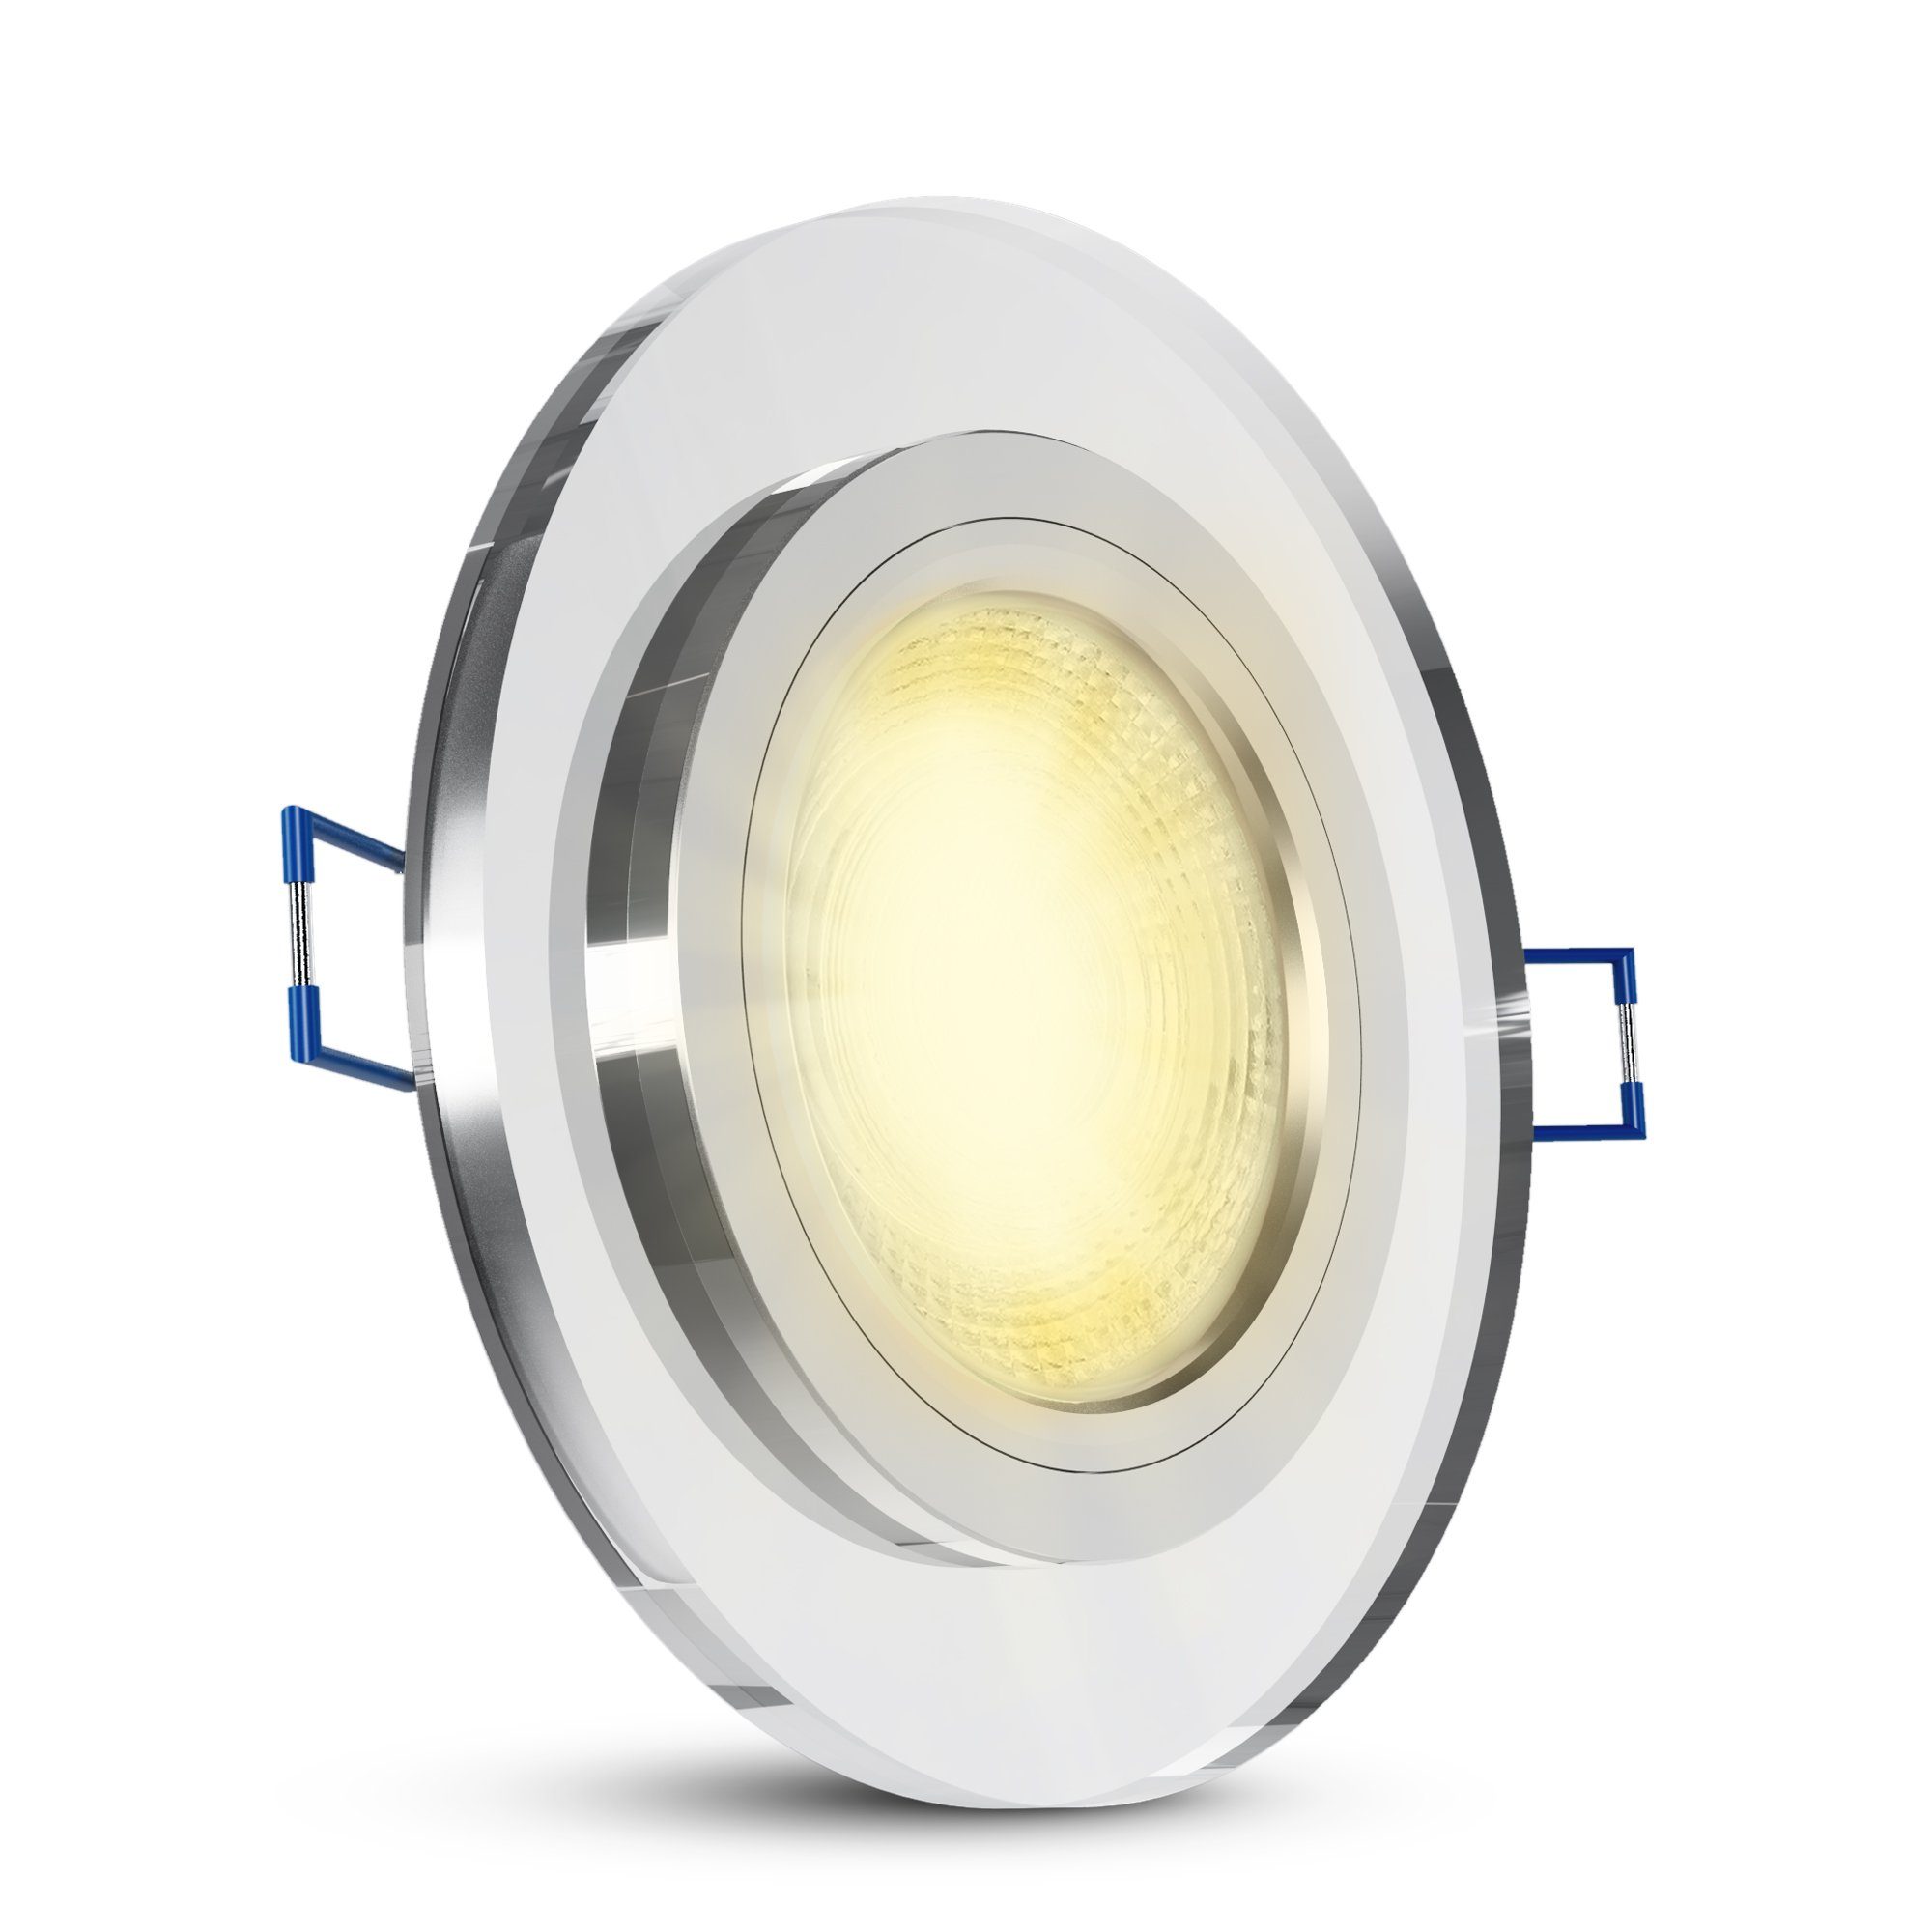 SSC-LUXon LED Einbaustrahler Design Glas LED Einbauleuchte in rund klar mit LED GU10 Lampe, Warmweiß